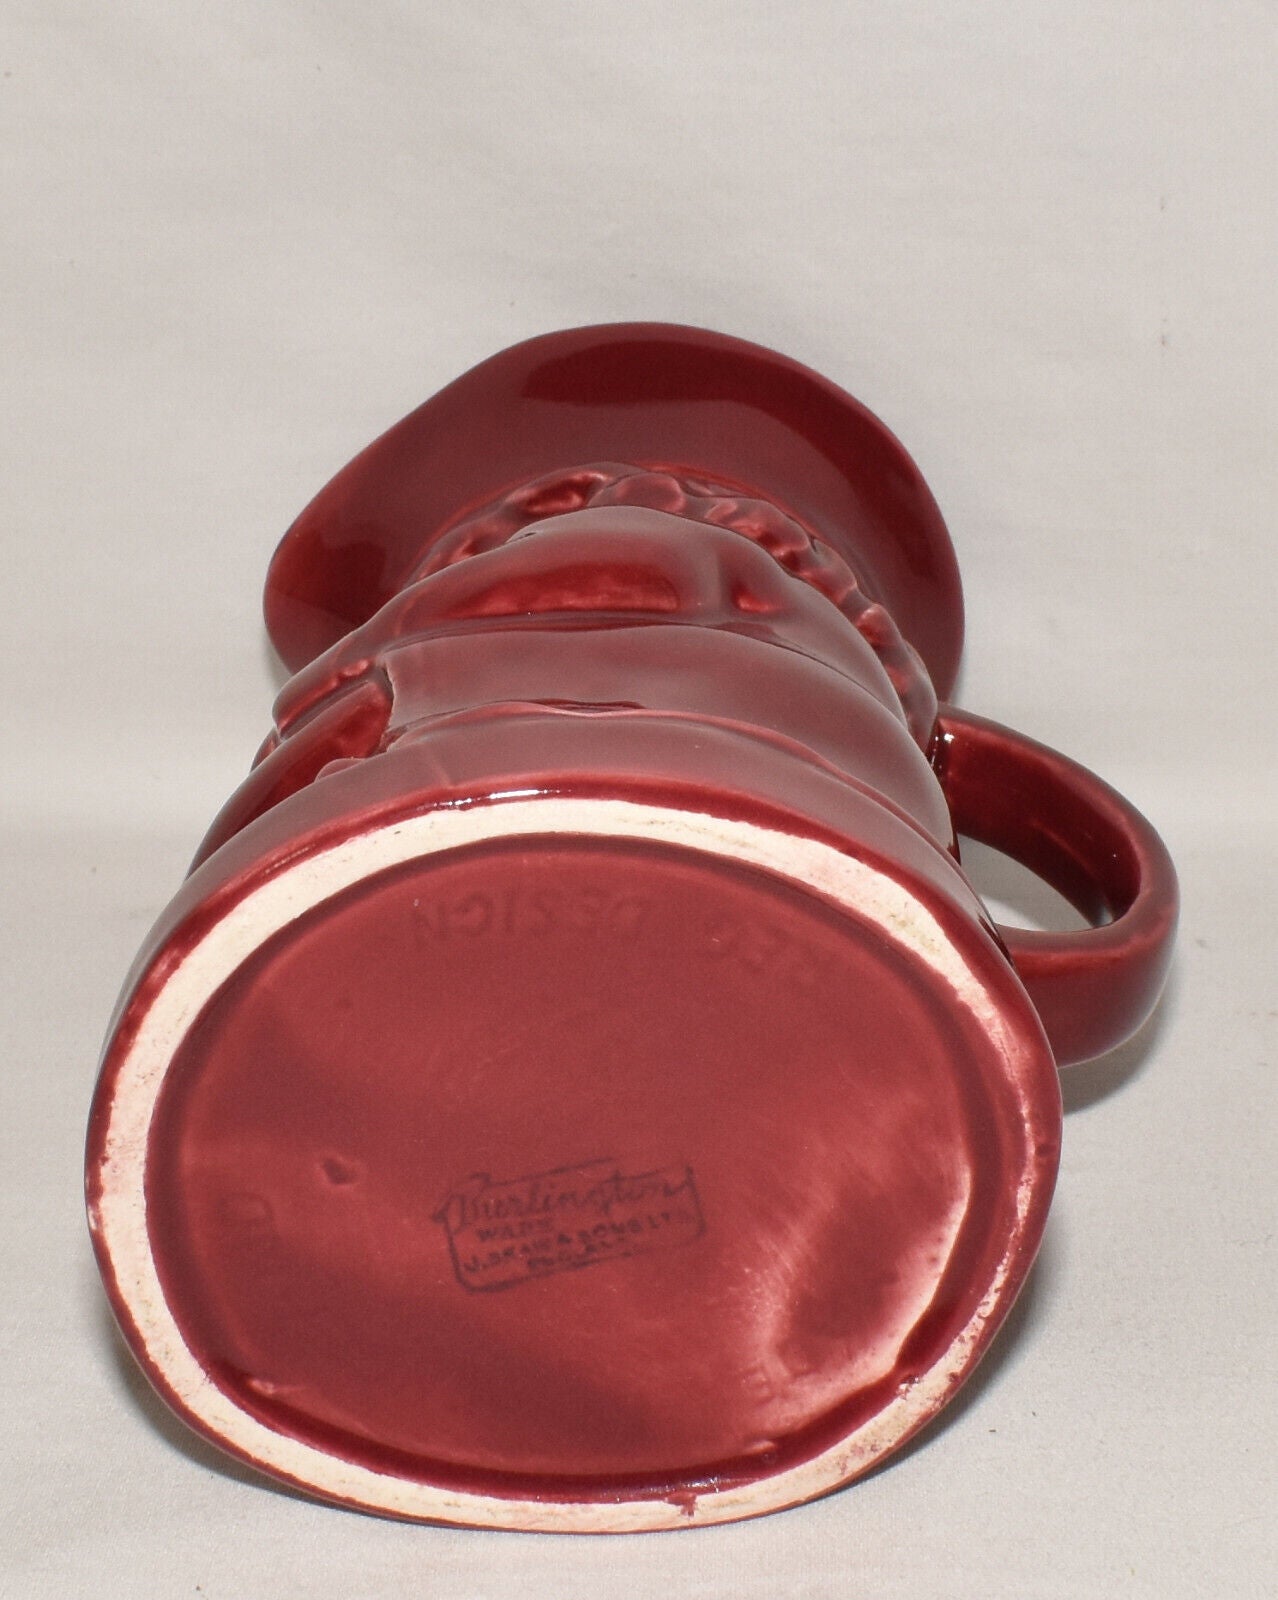 Vintage Burlington Ware Toby Pitcher Red Porcelain Sitting Toby Jug Made England